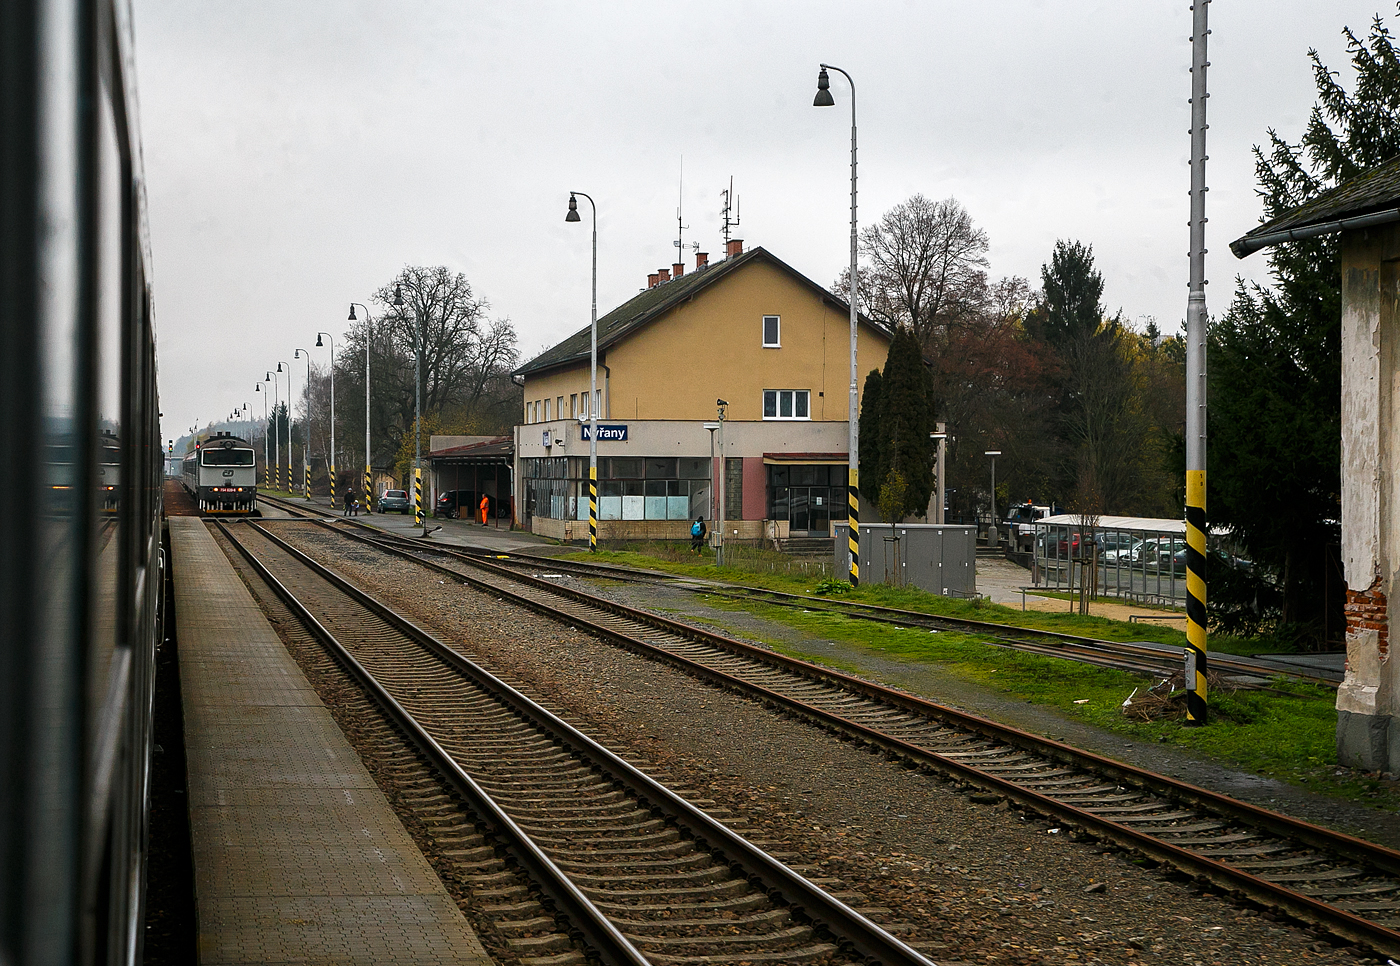 Geführt von der alexa 223 065 (92 80 1223 065-4 D-DLB) fährt unser alex RE 25 / als EX 357 bzw. EC (München – Landshut – Regenburg – Schwandorf – Furth i.W. – Plzeň – Praha), am 22.11.2022 durch den tschechischen Bahnhof Nýřany (Nürschan) auf der „Böhmische Westbahn“ Bahnstrecke Plzeň–Furth im Wald (SŽDC 180).  Ab Furth im Wald wird der Zug als EX 357 (Západní expres / West Express) geführt.

Im Bahnhof steht die „Taucherbrille“ ČD 754 039-6 mit einem Regionalzug.

Die Bahnstrecke Plzeň–Furth im Wald ist eine Eisenbahnverbindung in Tschechien und Deutschland, die ursprünglich von der k.k. priv. Böhmischen Westbahn (BWB) erbaut und betrieben wurde. Sie verläuft von Plzeň (Pilsen) über Nýřany (Nürschan), Staňkov (Stankau) und Domažlice (Taus) nach Furth im Wald, wo sie in die Bahnstrecke Schwandorf–Furth im Wald einmündet.
